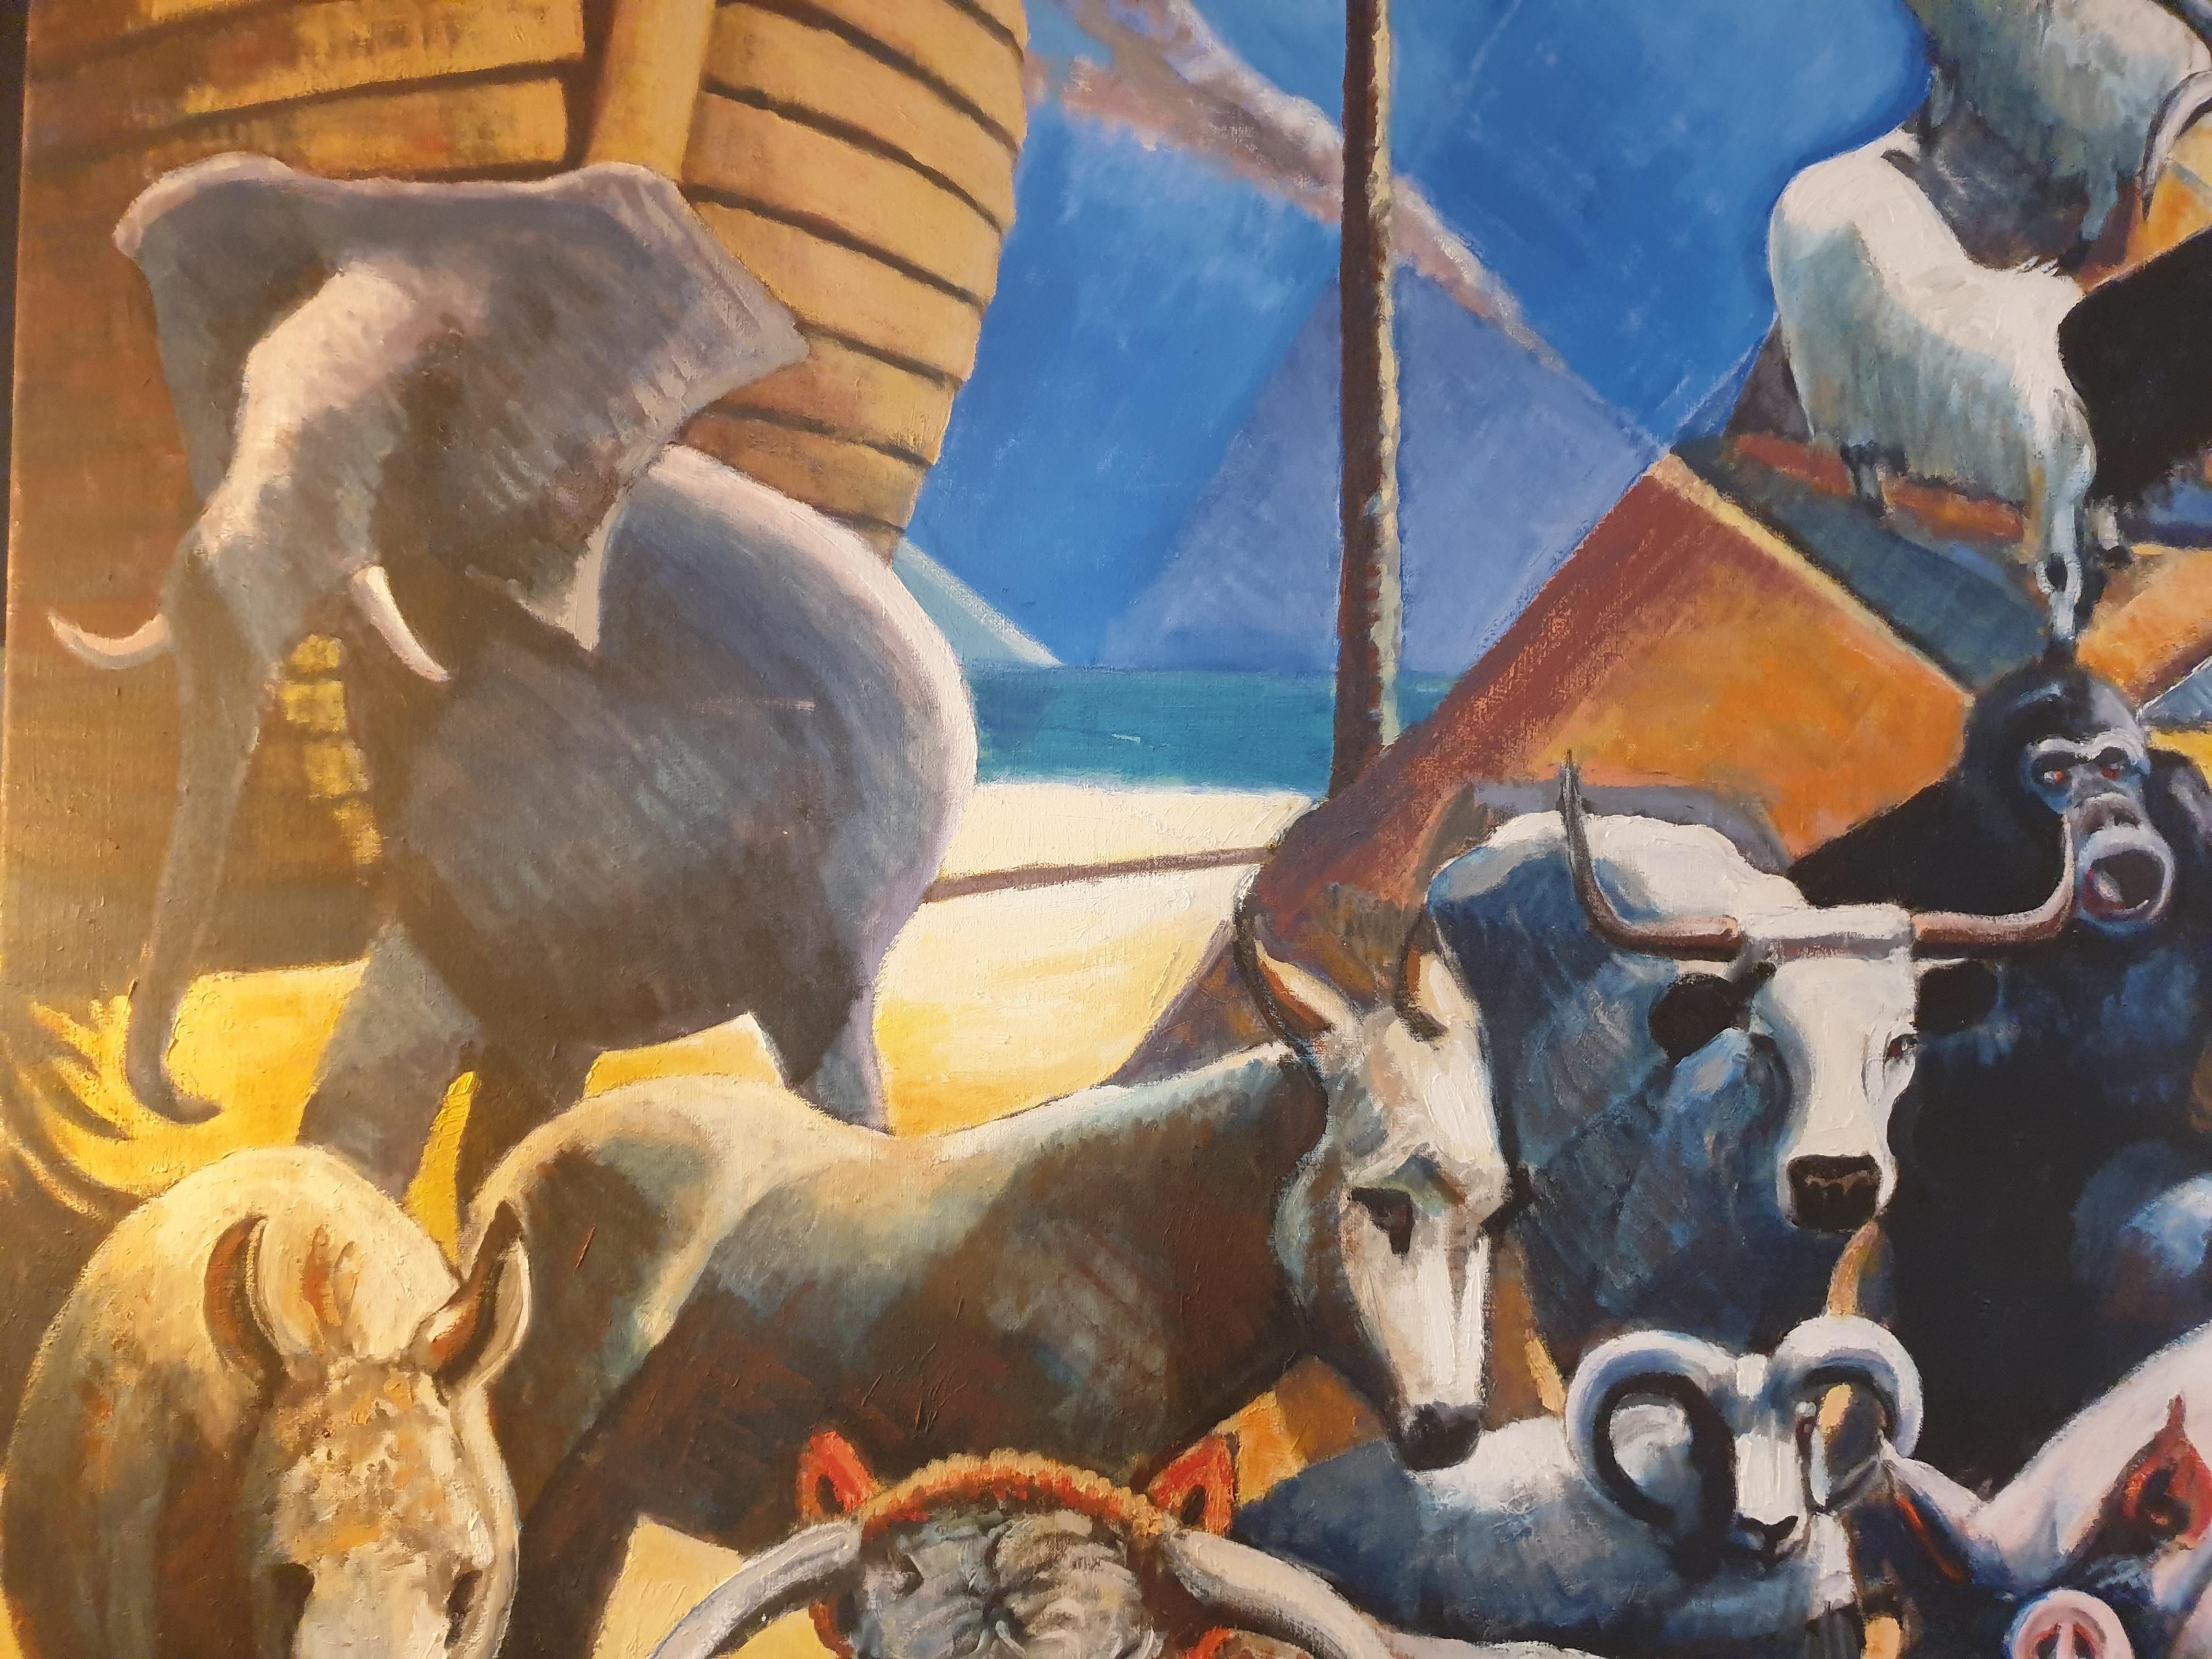 Très grande huile sur toile de la fin du 20e siècle représentant l'Arche de Noé et les Artistics par l'artiste britannique Derek Carruthers. Signé en bas à droite.

Une peinture magique, très colorée et énergique de l'arche de Noé et de ses animaux.